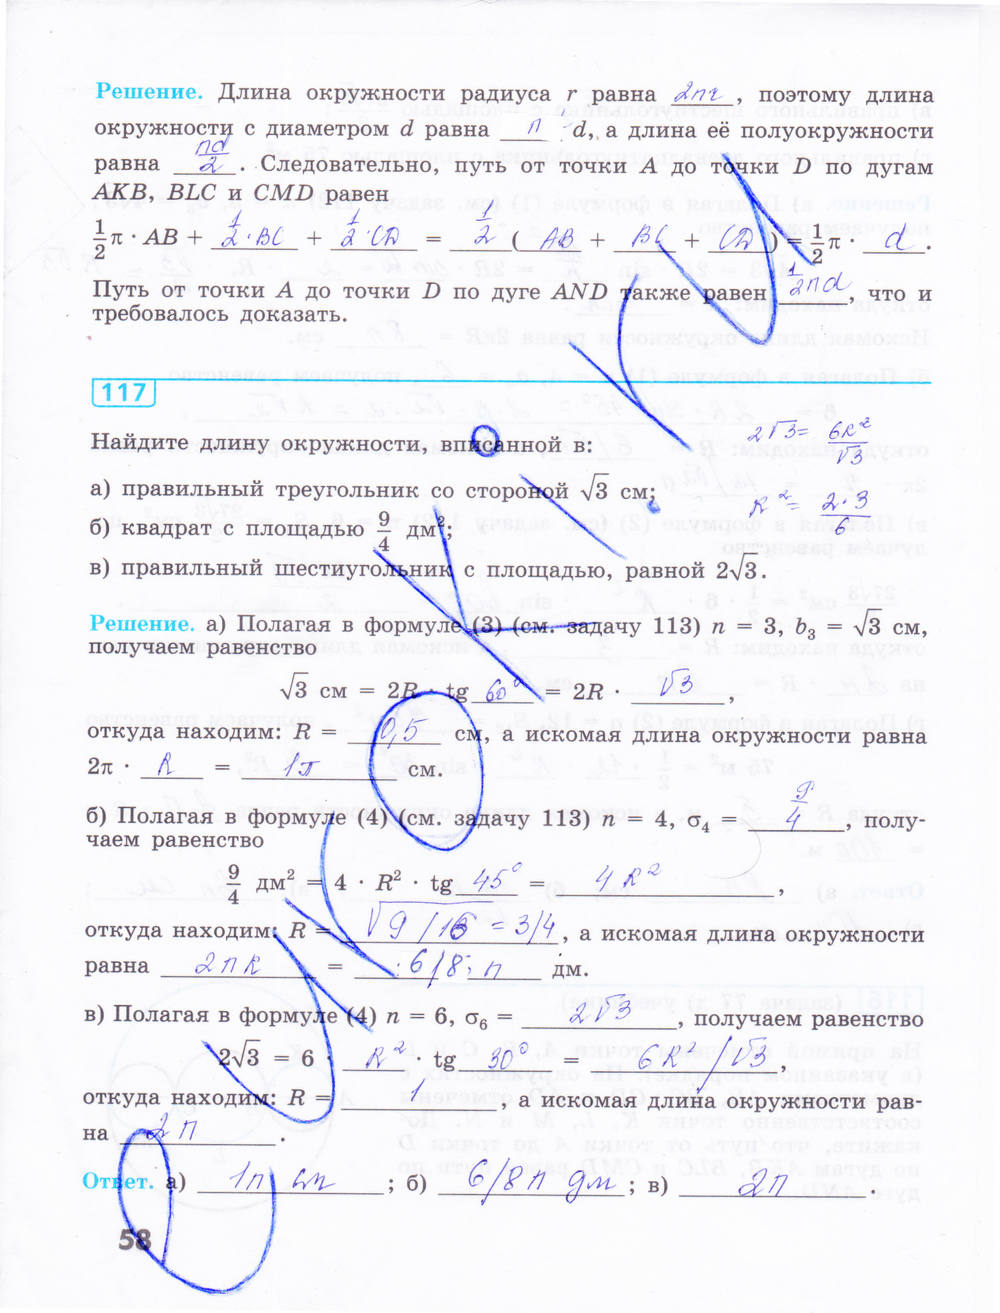 Рабочая тетрадь, 9 класс, Бутузов В.Ф., 2014, задание: стр. 58